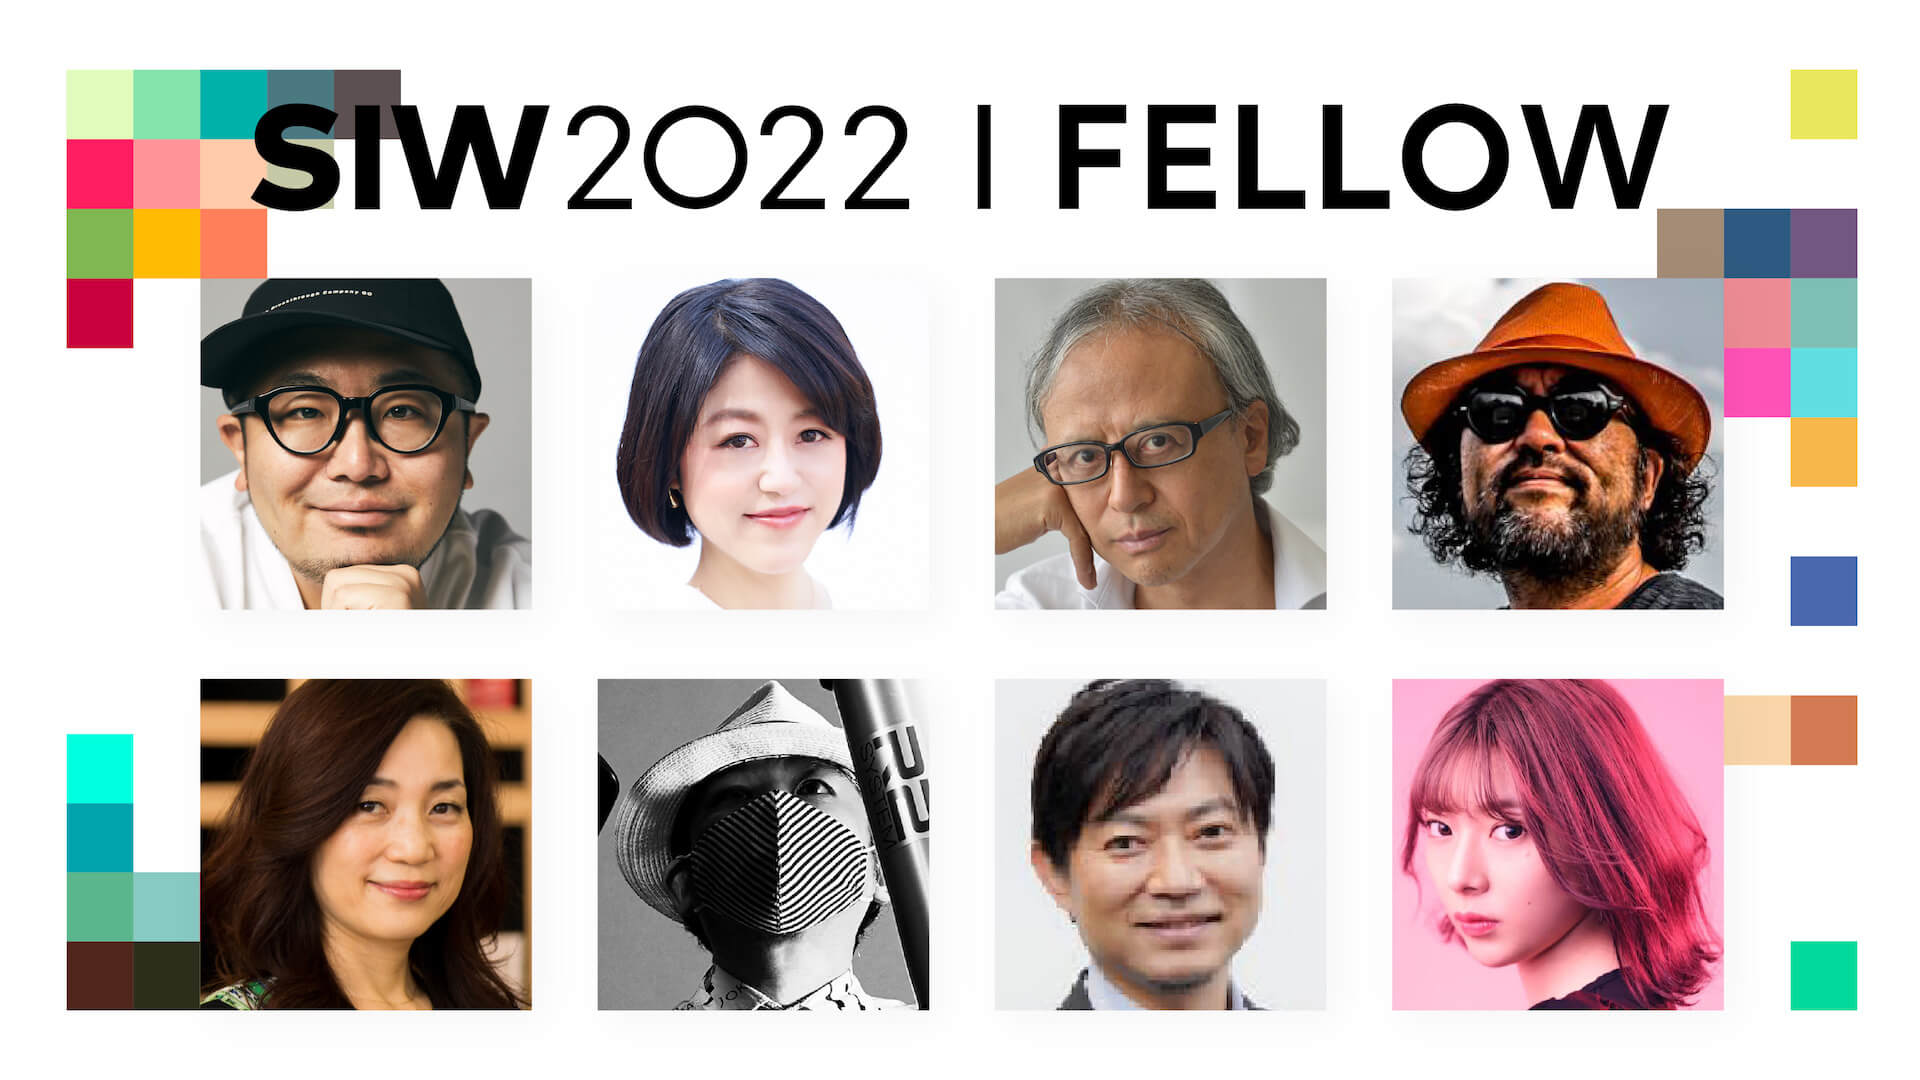 渋谷アイデア会議「SOCIAL INNOVATION WEEK SHIBUYA 2022」フェロー発表｜「アイデアと触れ合う、渋谷の6日間。」開催 culture20922-social-innovation-week-shibuya-01